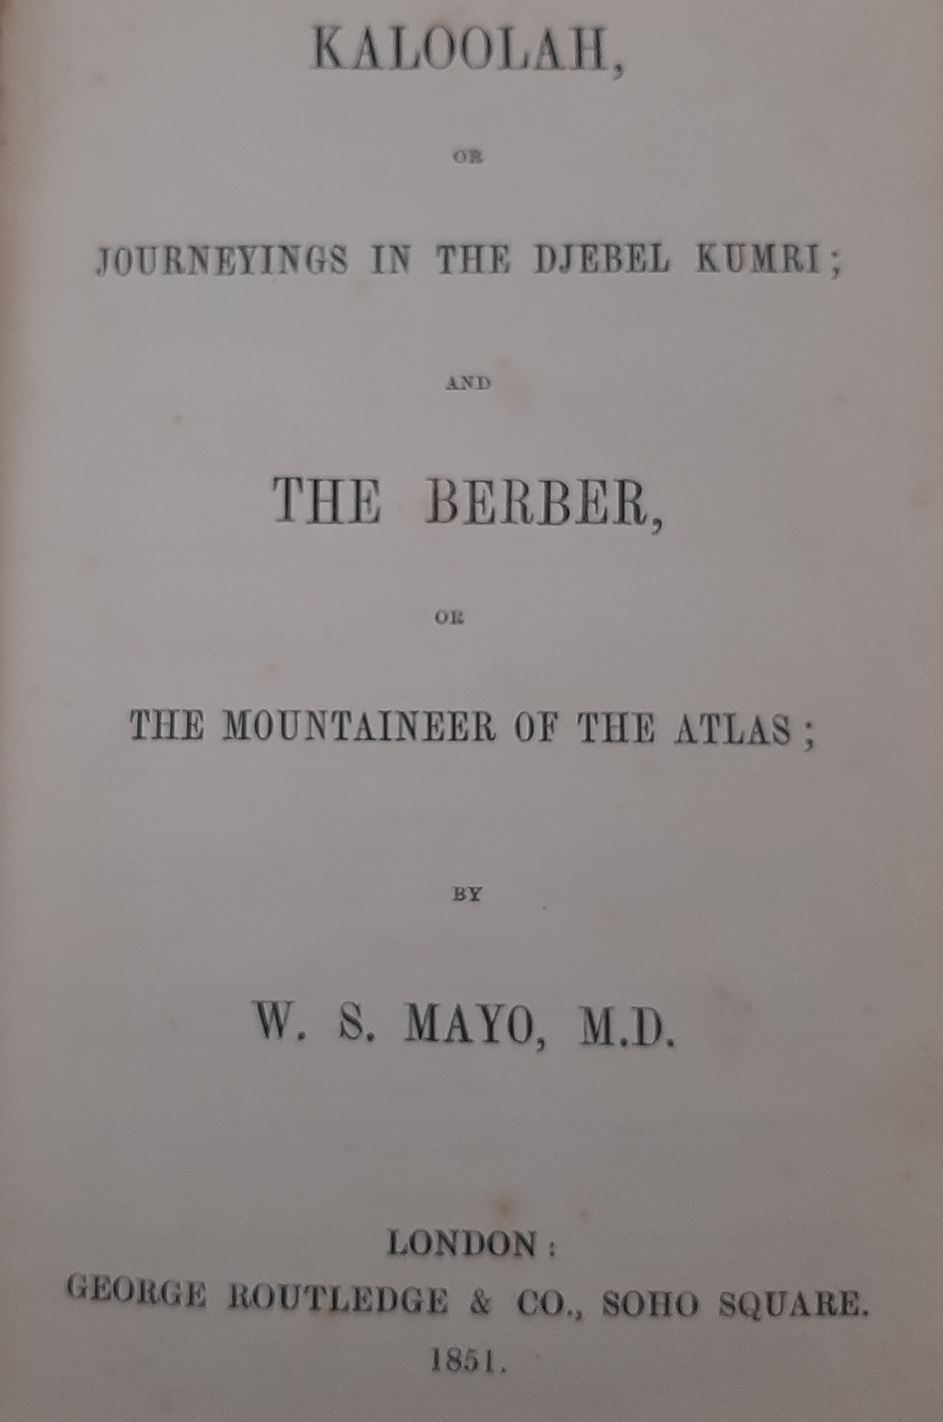 THE BERBER 1851